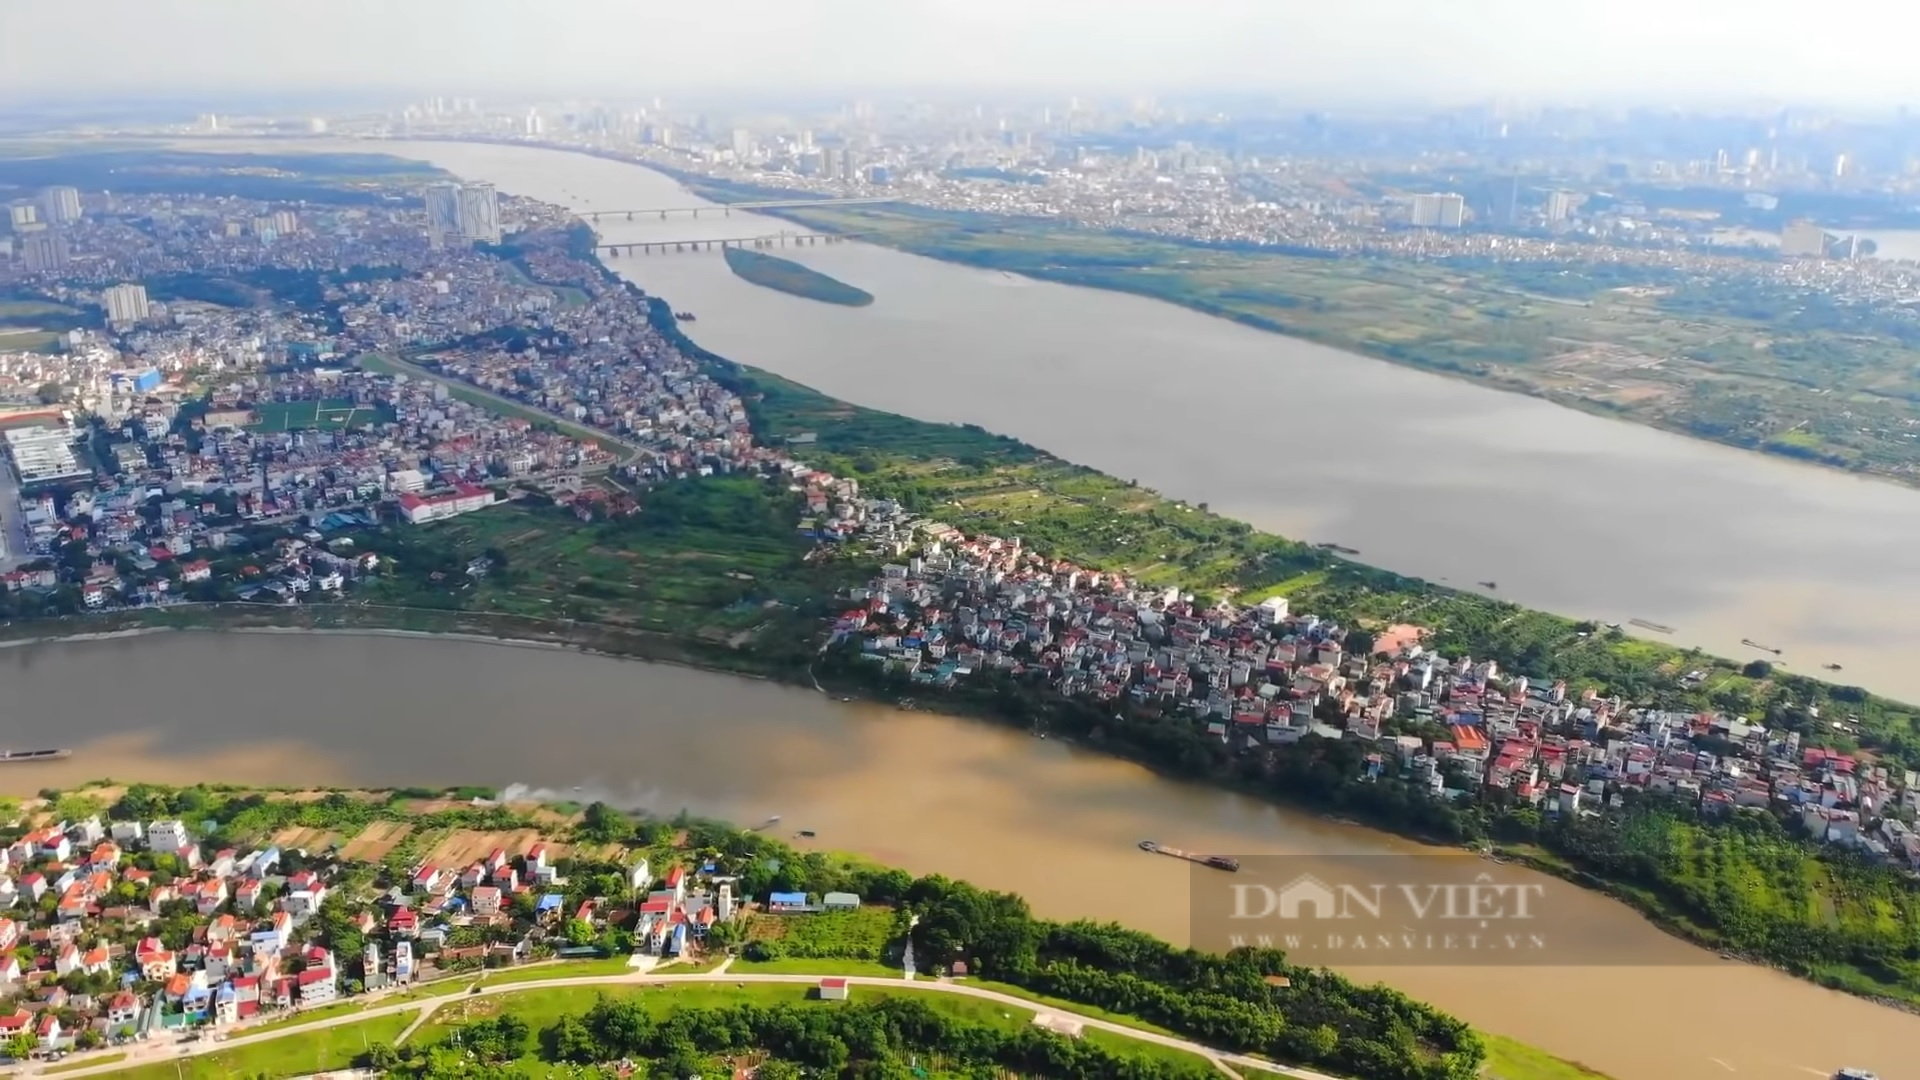 UBND thành phố Hà Nội đã phê duyệt quy hoạch đô thị sông Hồng xác định một số khu vực phải di dời để đảm bảo khả năng thoát lũ của tuyến sông (Ảnh: TN)